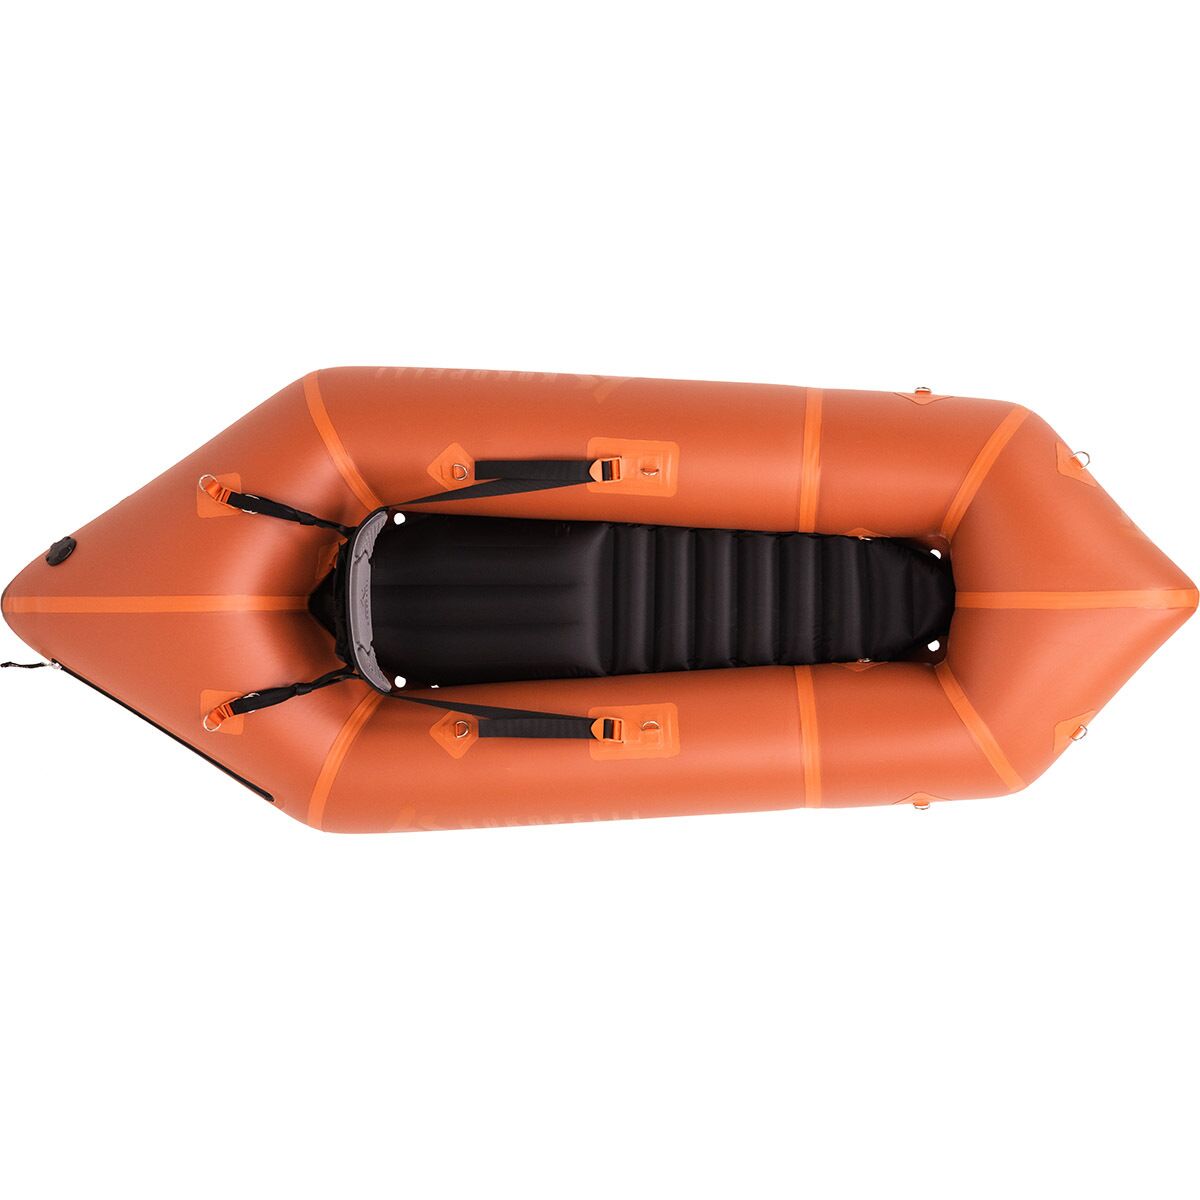 Kokopelli Recon Inflatable Kayak